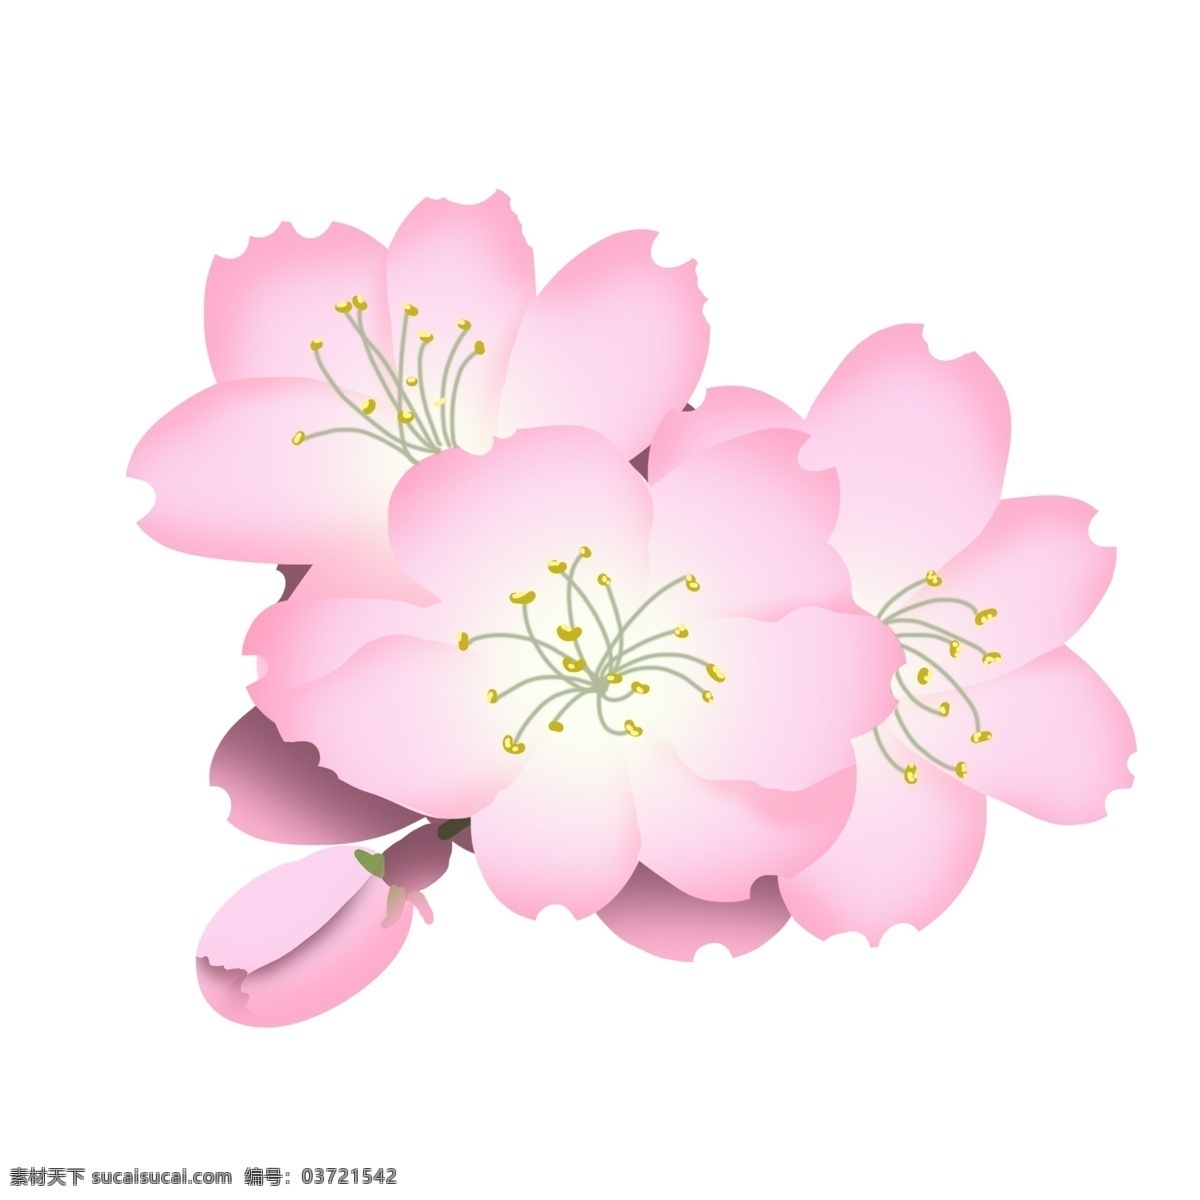 粉色 樱花 卡通 插画 粉色的樱花 卡通插画 樱花插画 花朵插画 鲜花 花瓣 花束 漂亮的樱花